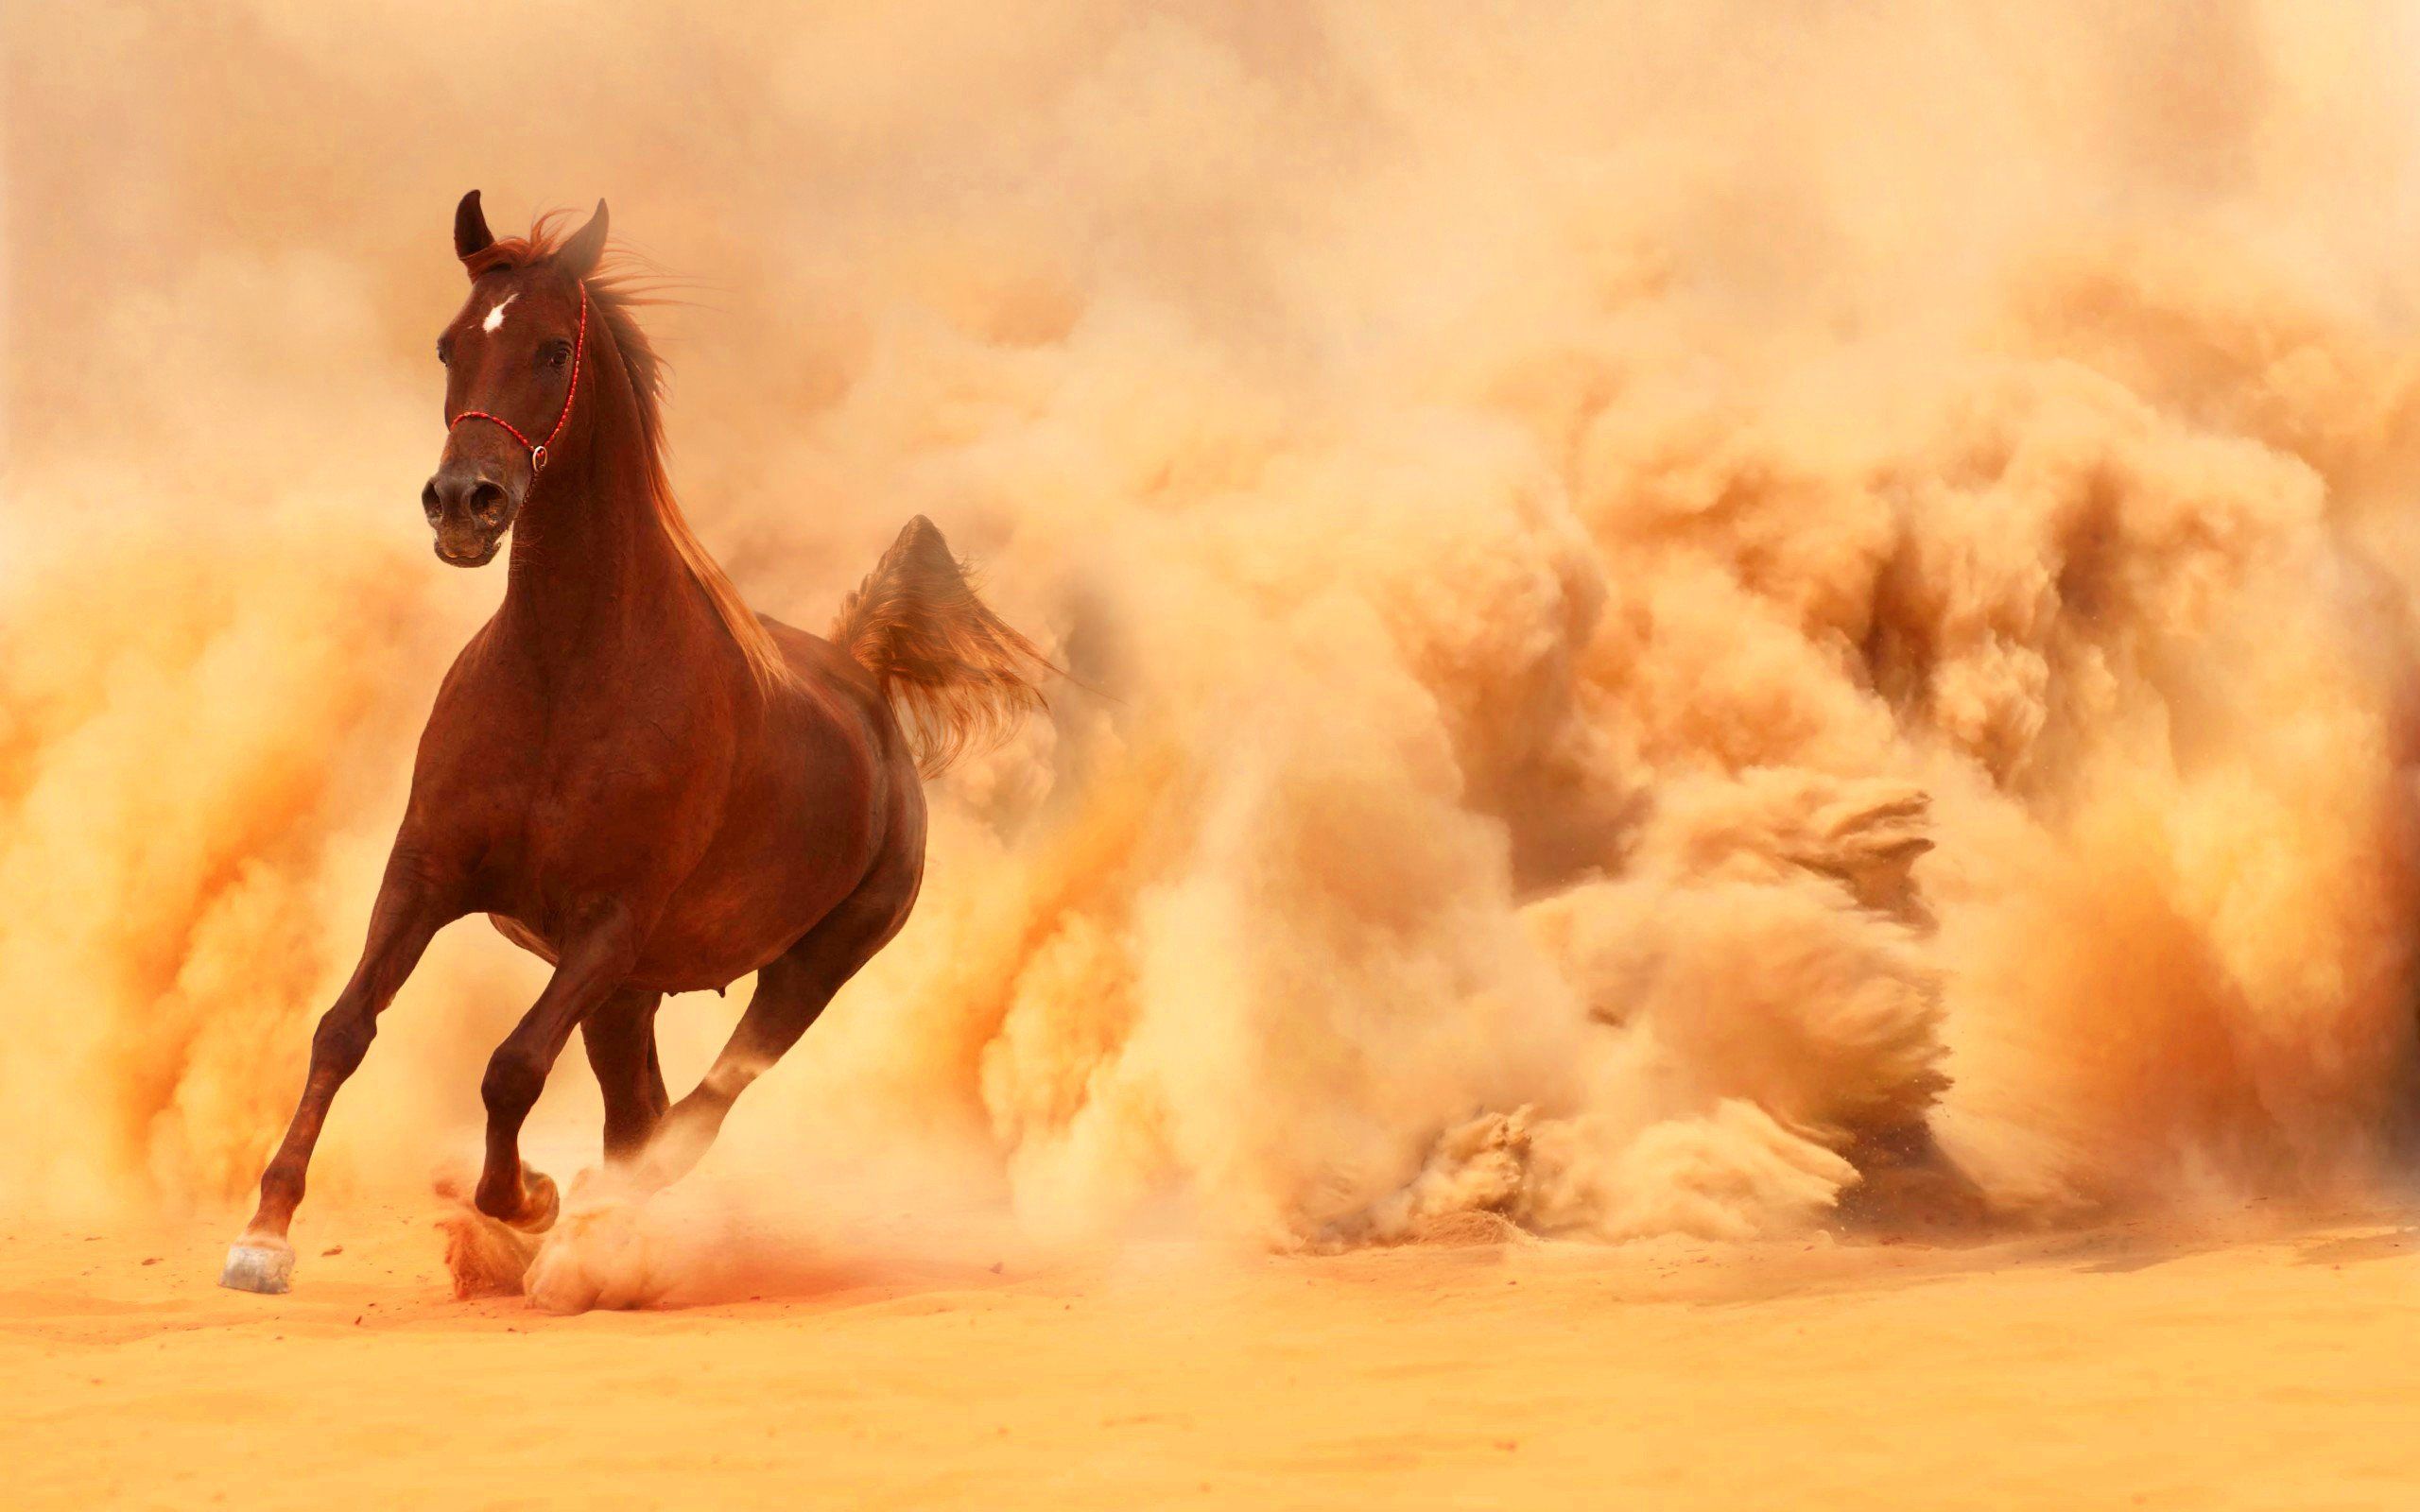 Photography. Horses, Horse wallpaper, Beautiful horses